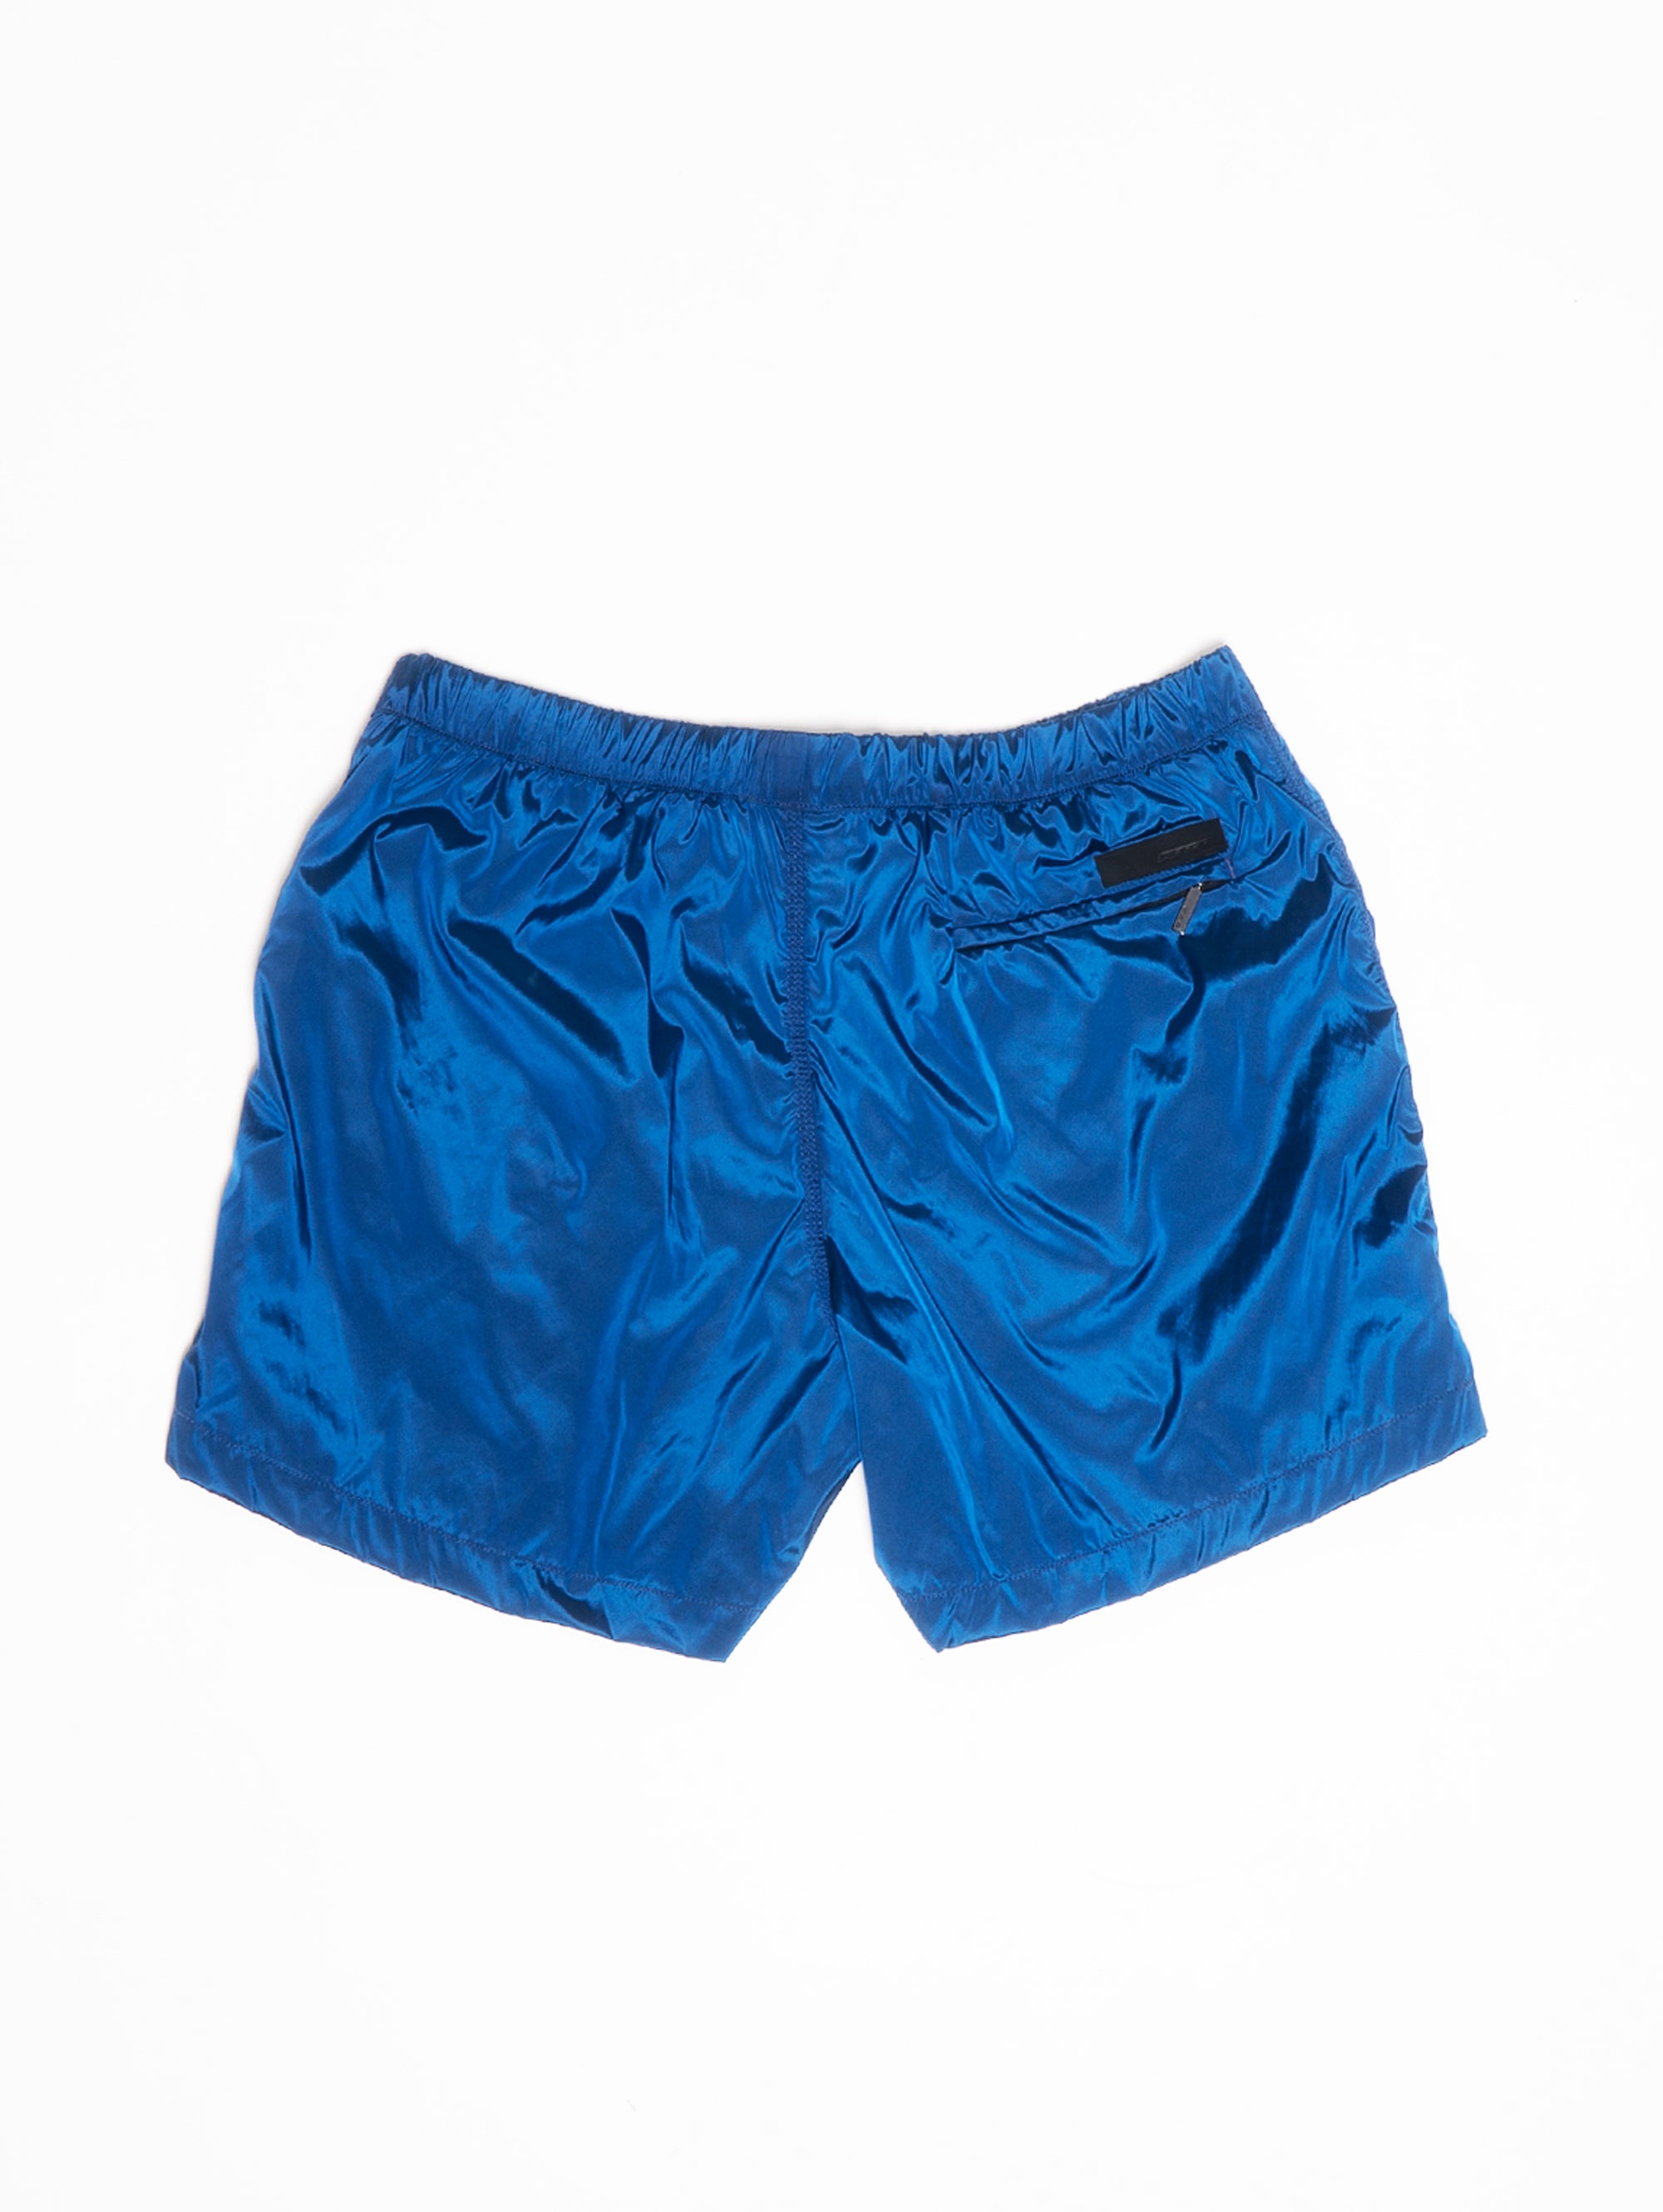 Bluette Shiny Swimsuit Boxer